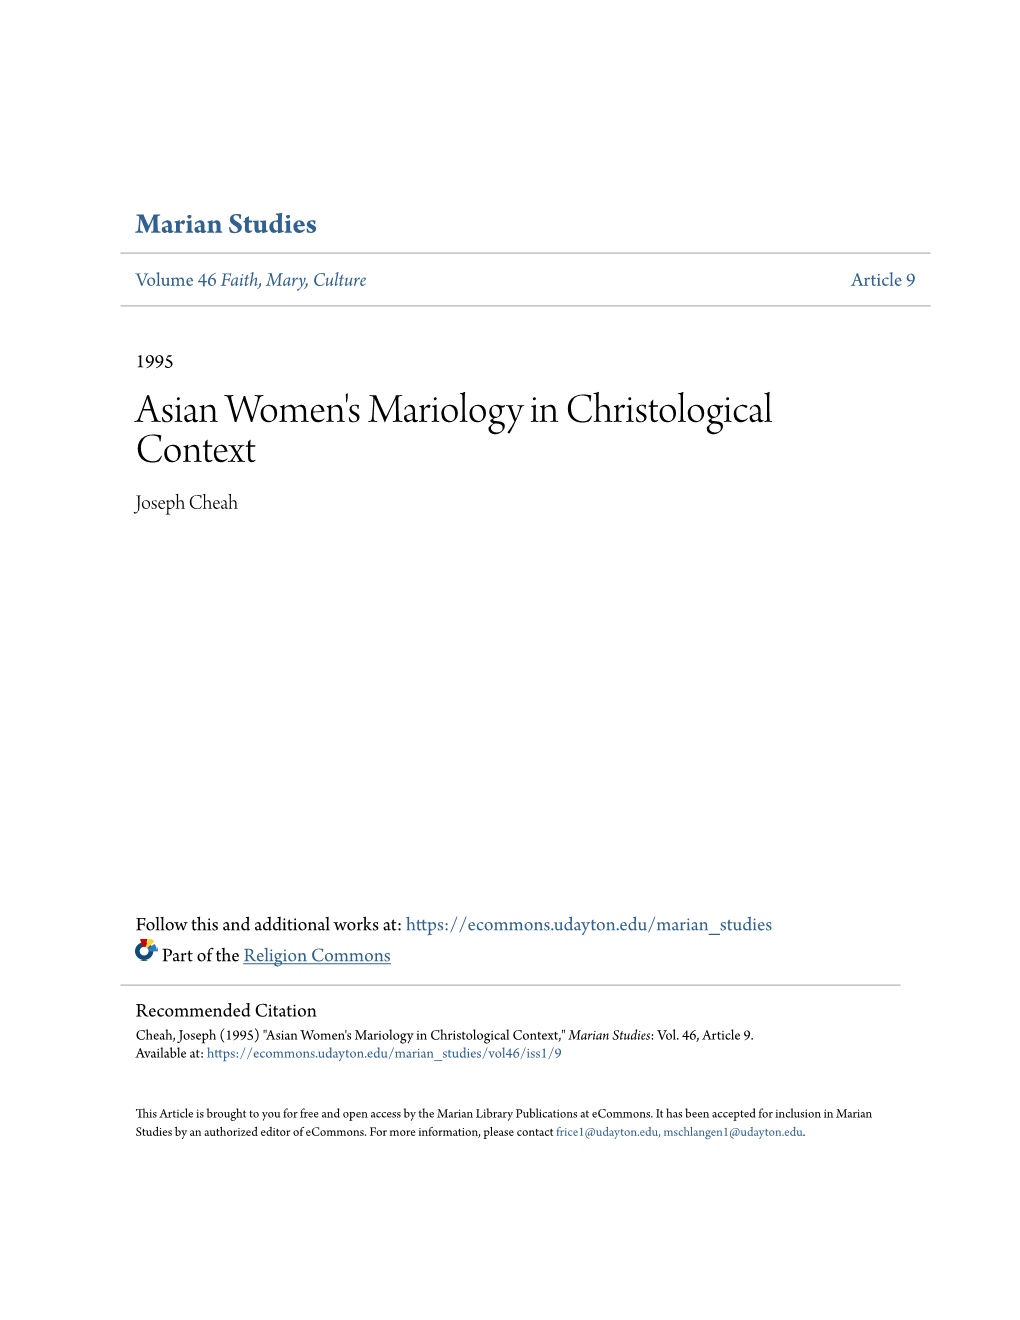 Asian Women's Mariology in Christological Context Joseph Cheah